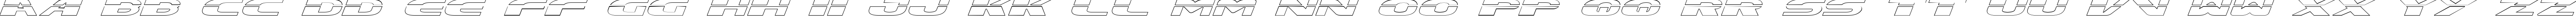 Пример написания английского алфавита шрифтом Excelerate Outline